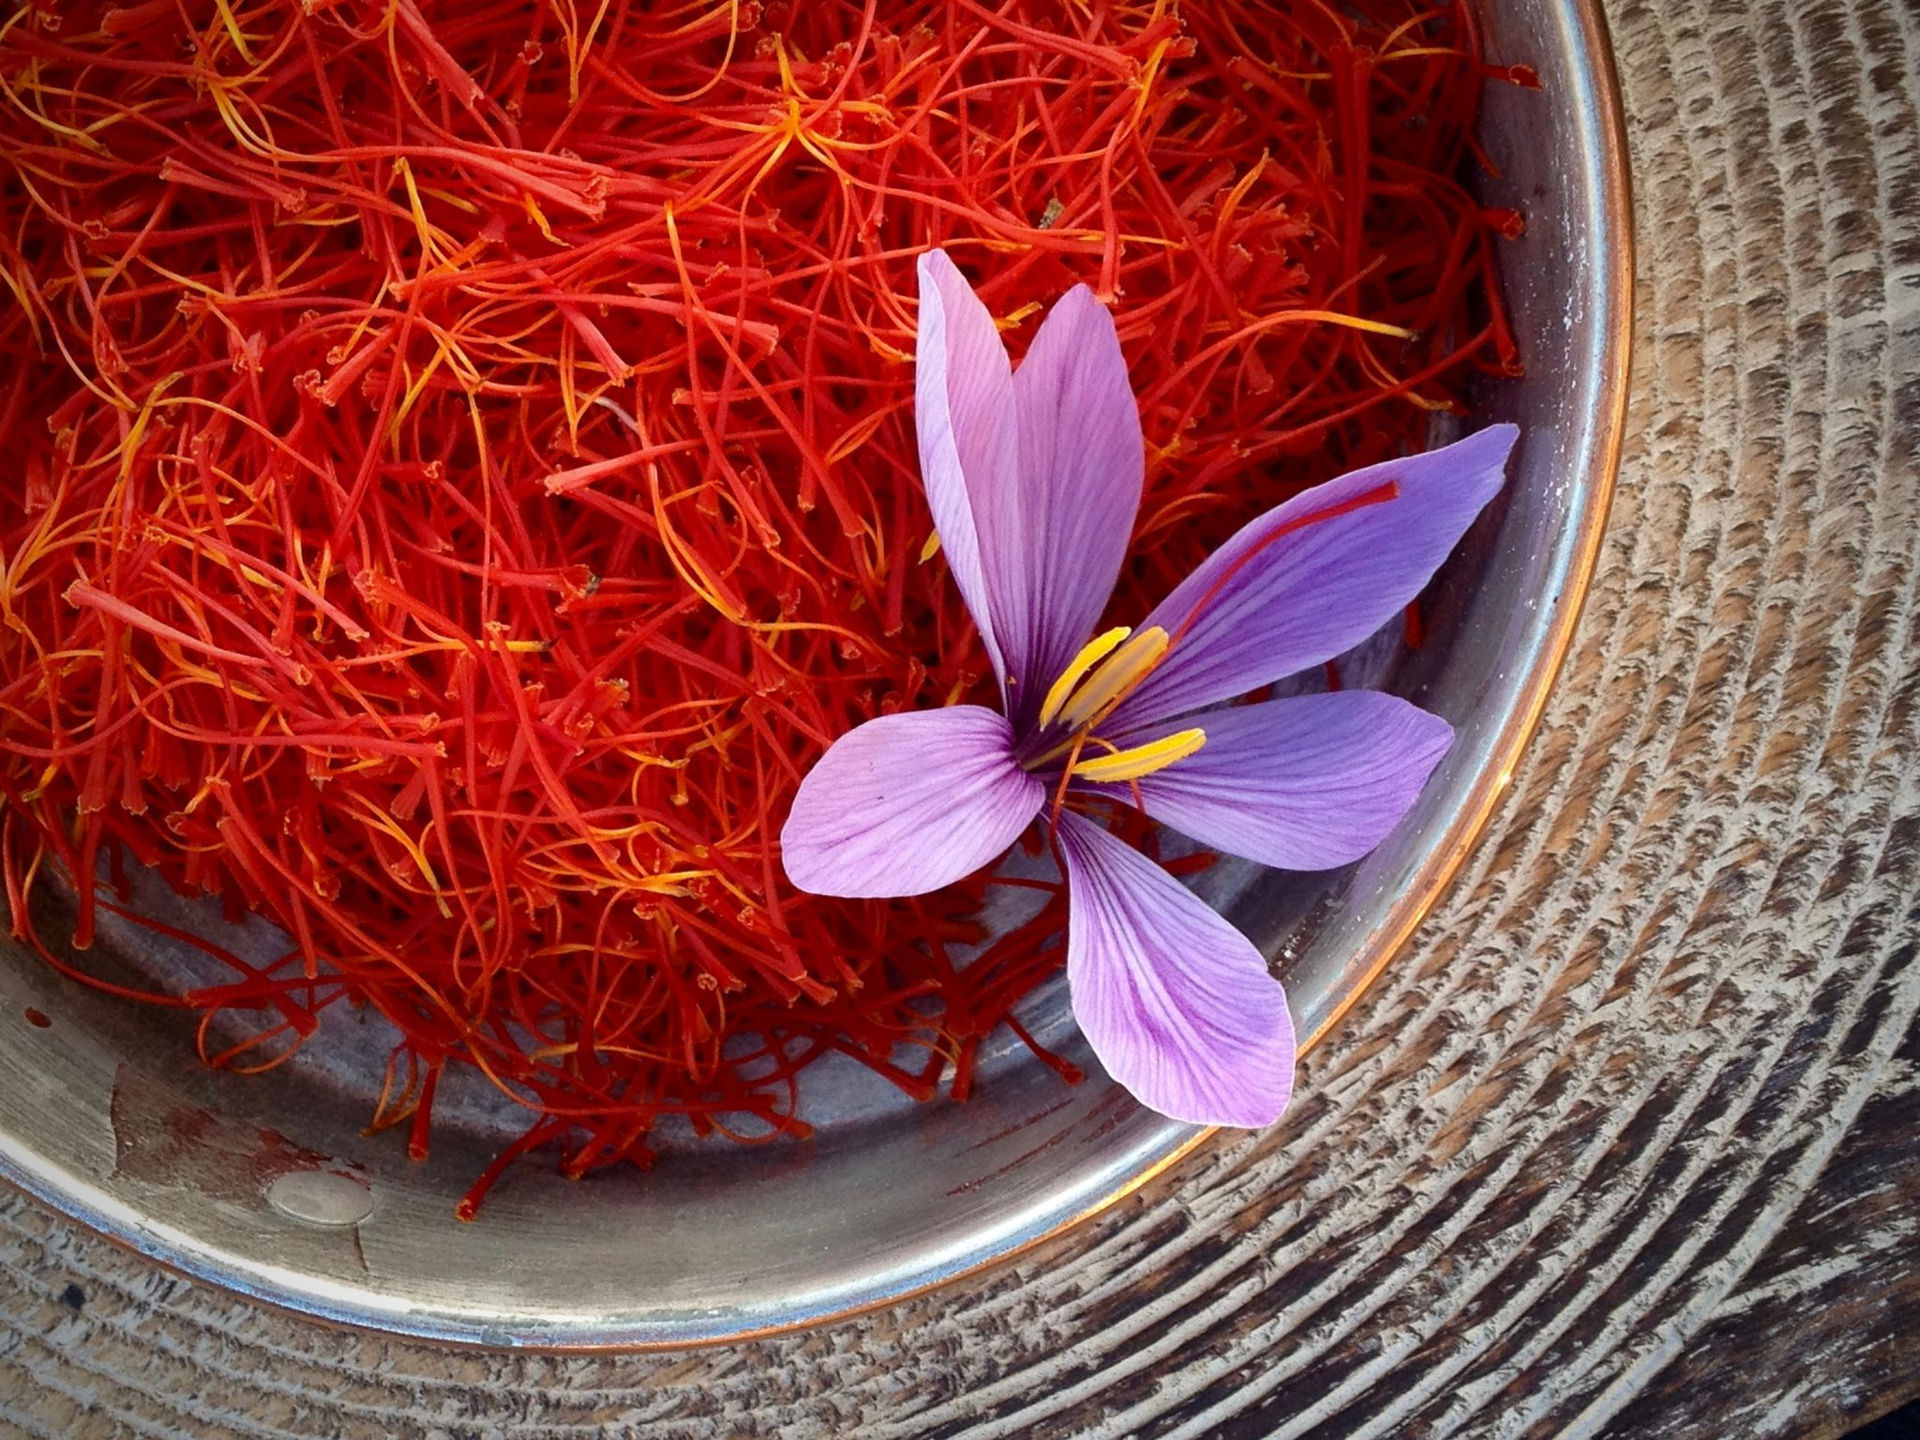 Nhụy hoa nghệ tây (Saffron) được cho là có nhiều công dũng hữu ích, tuyệt vời.